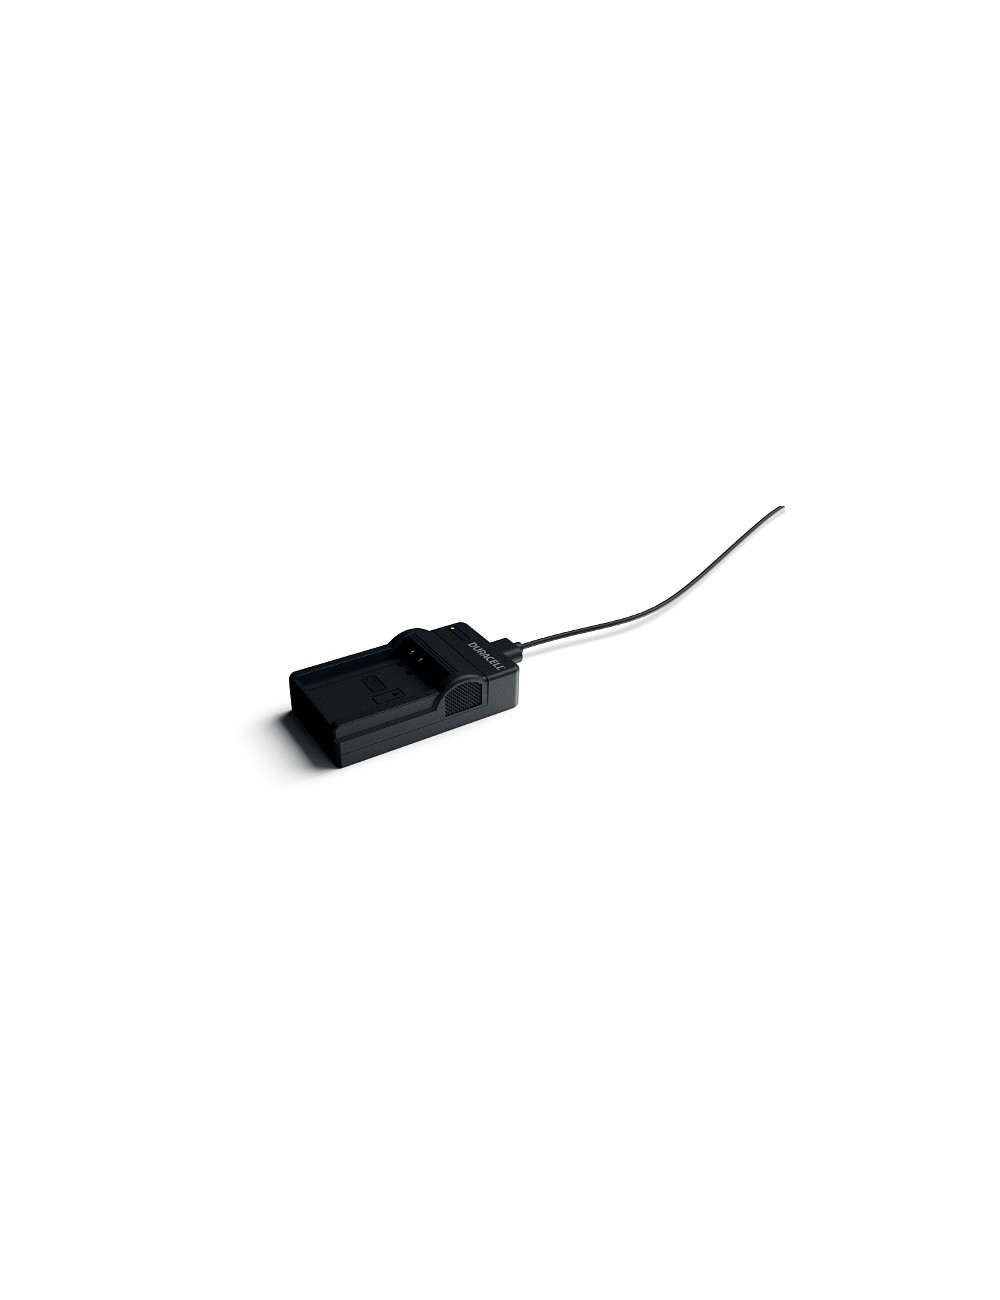 Cargador para batería Olympus BLN-1 USB Duracell - 1